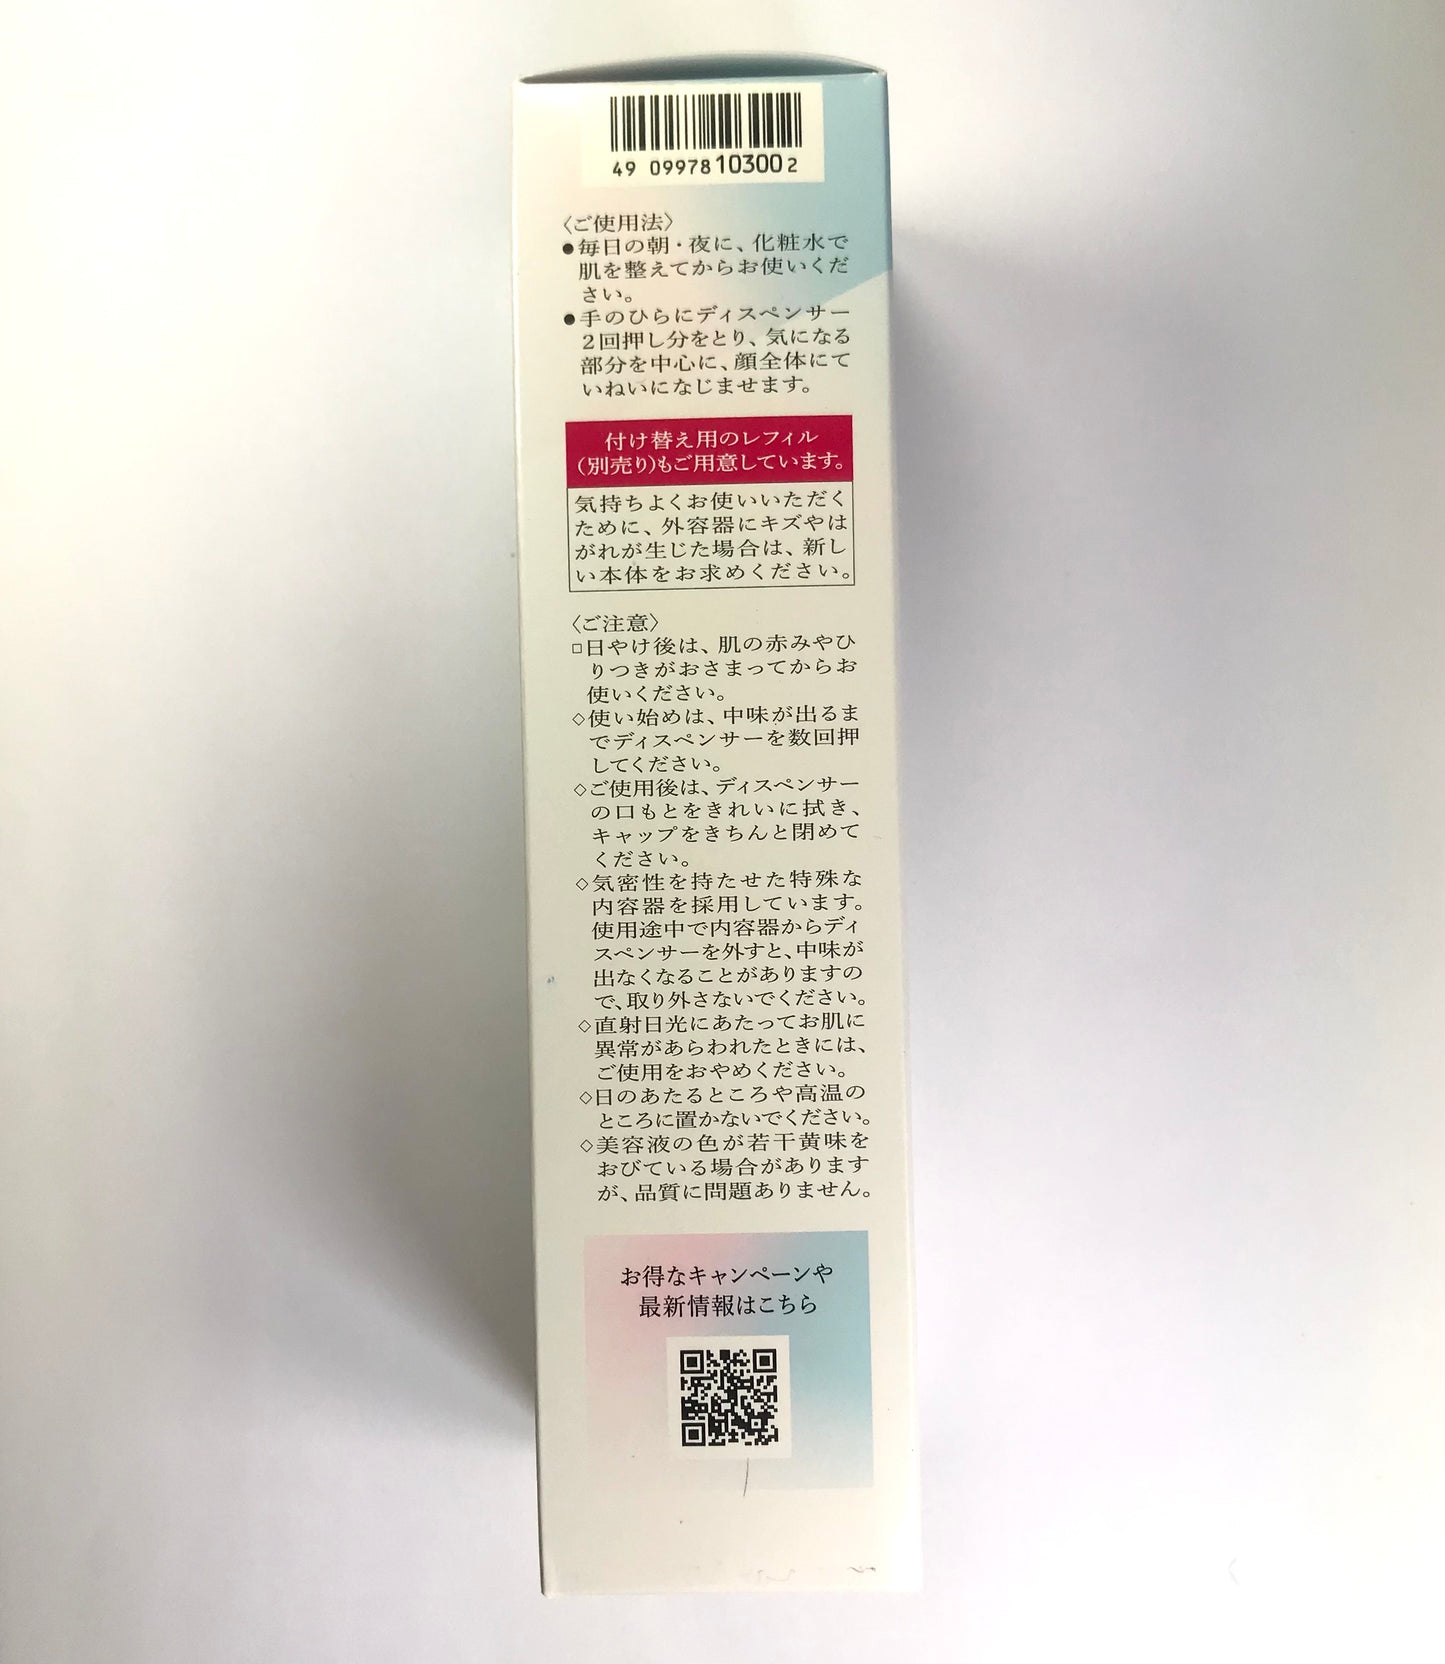 Shiseido HAKU Melanofocus V Whitening Serum 45g.